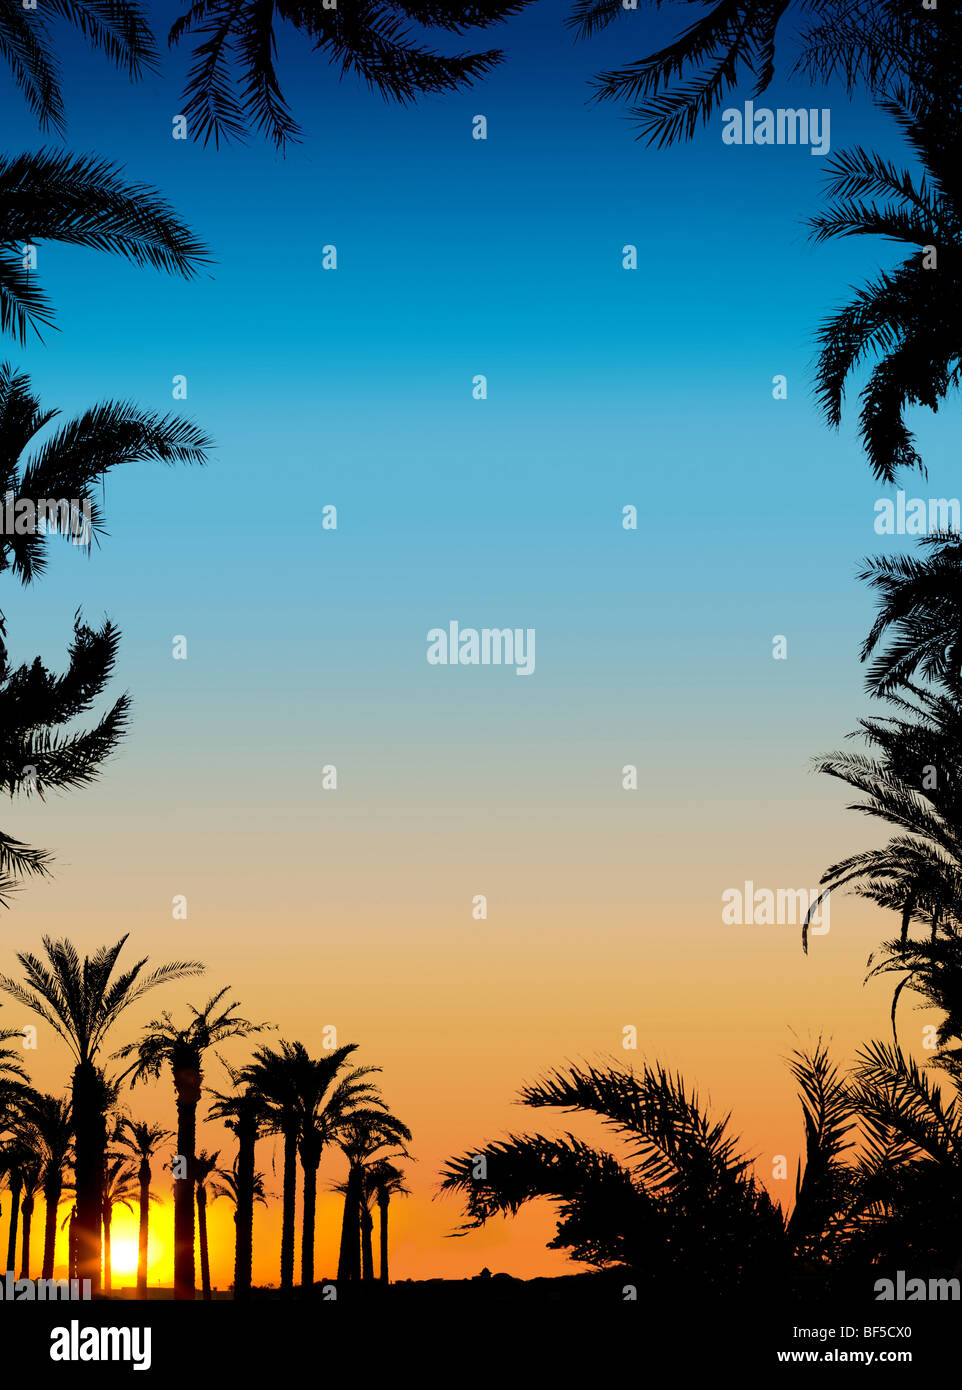 Les silhouettes des palmiers sur fond coucher de soleil magnifique Banque D'Images